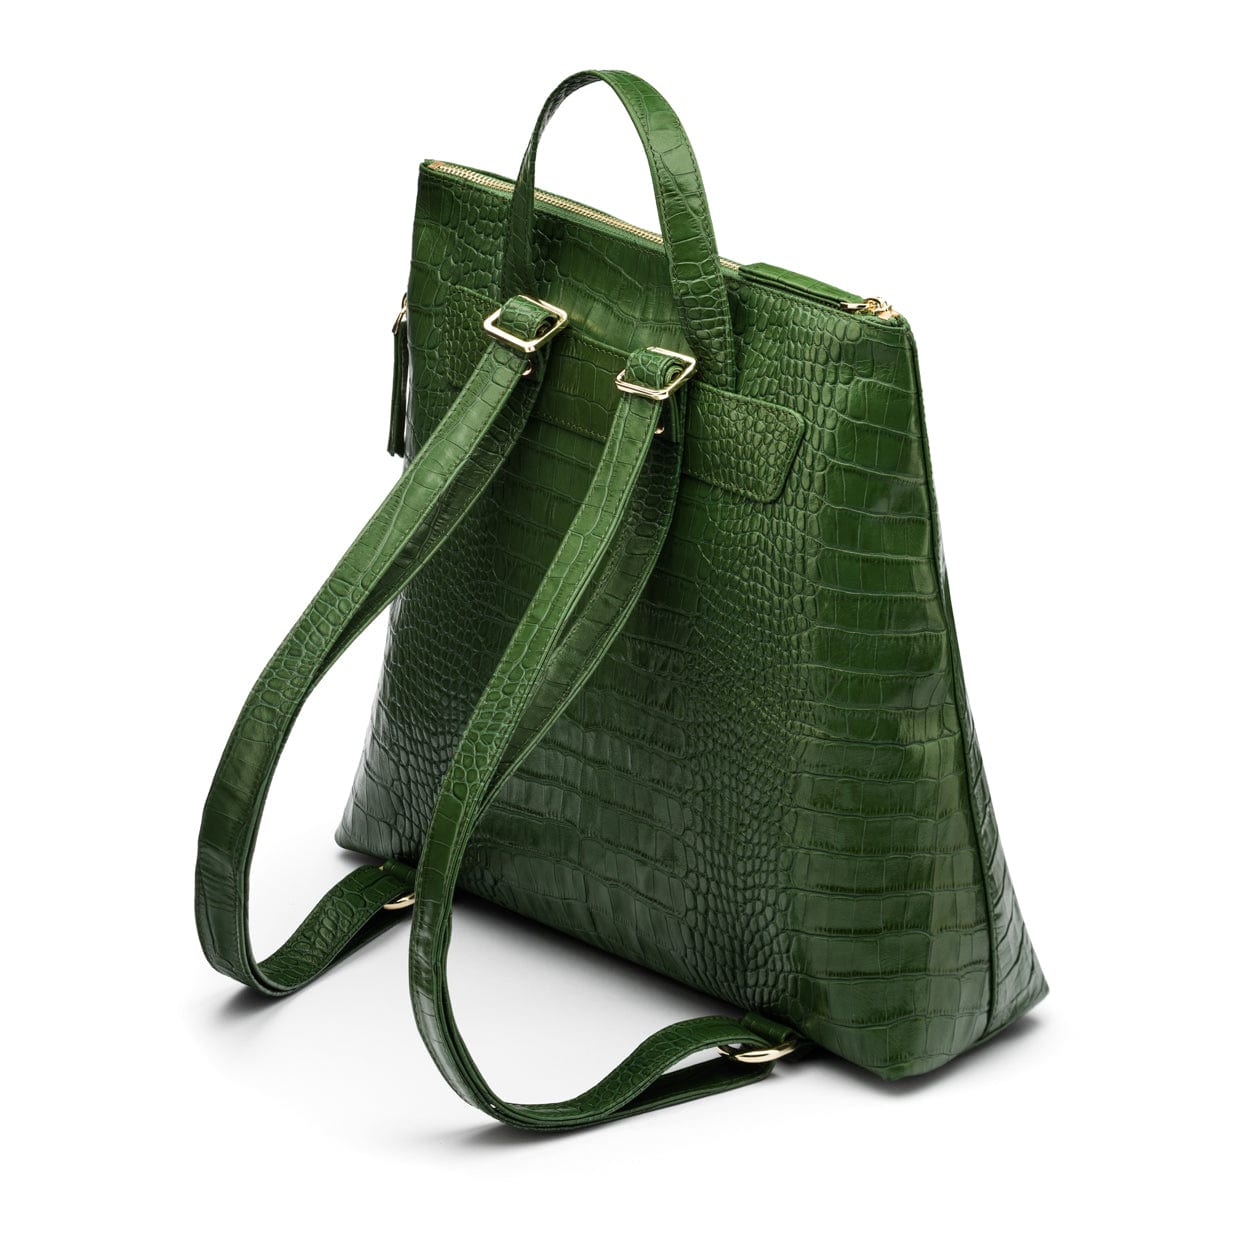 Leather 13" laptop backpack, green croc, side back